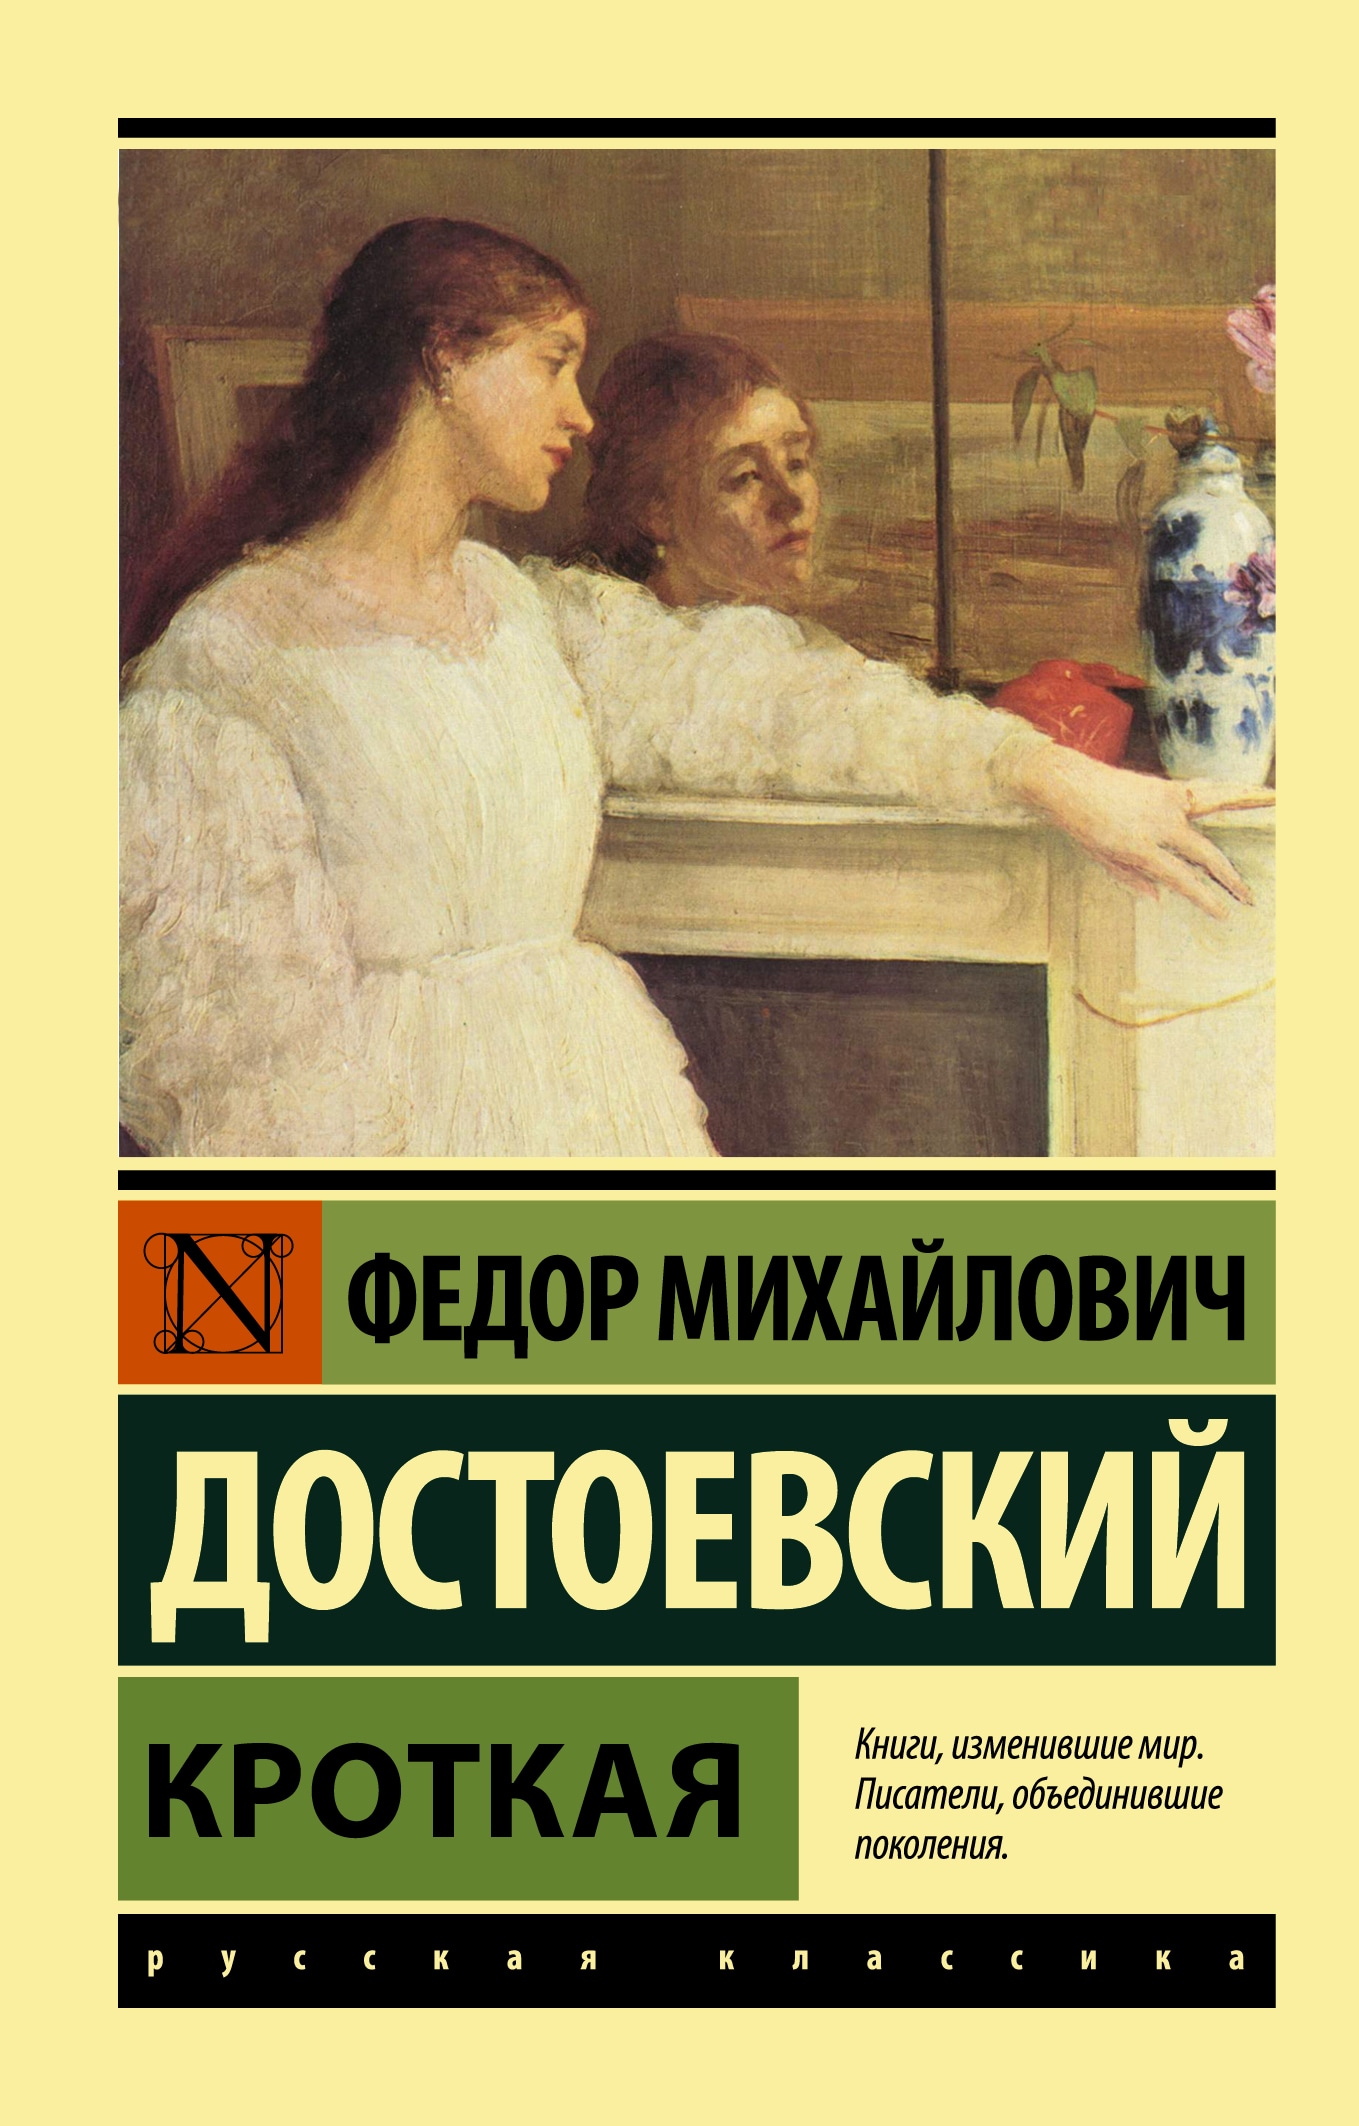 Книга «Кроткая» Федор Достоевский — 2021 г.